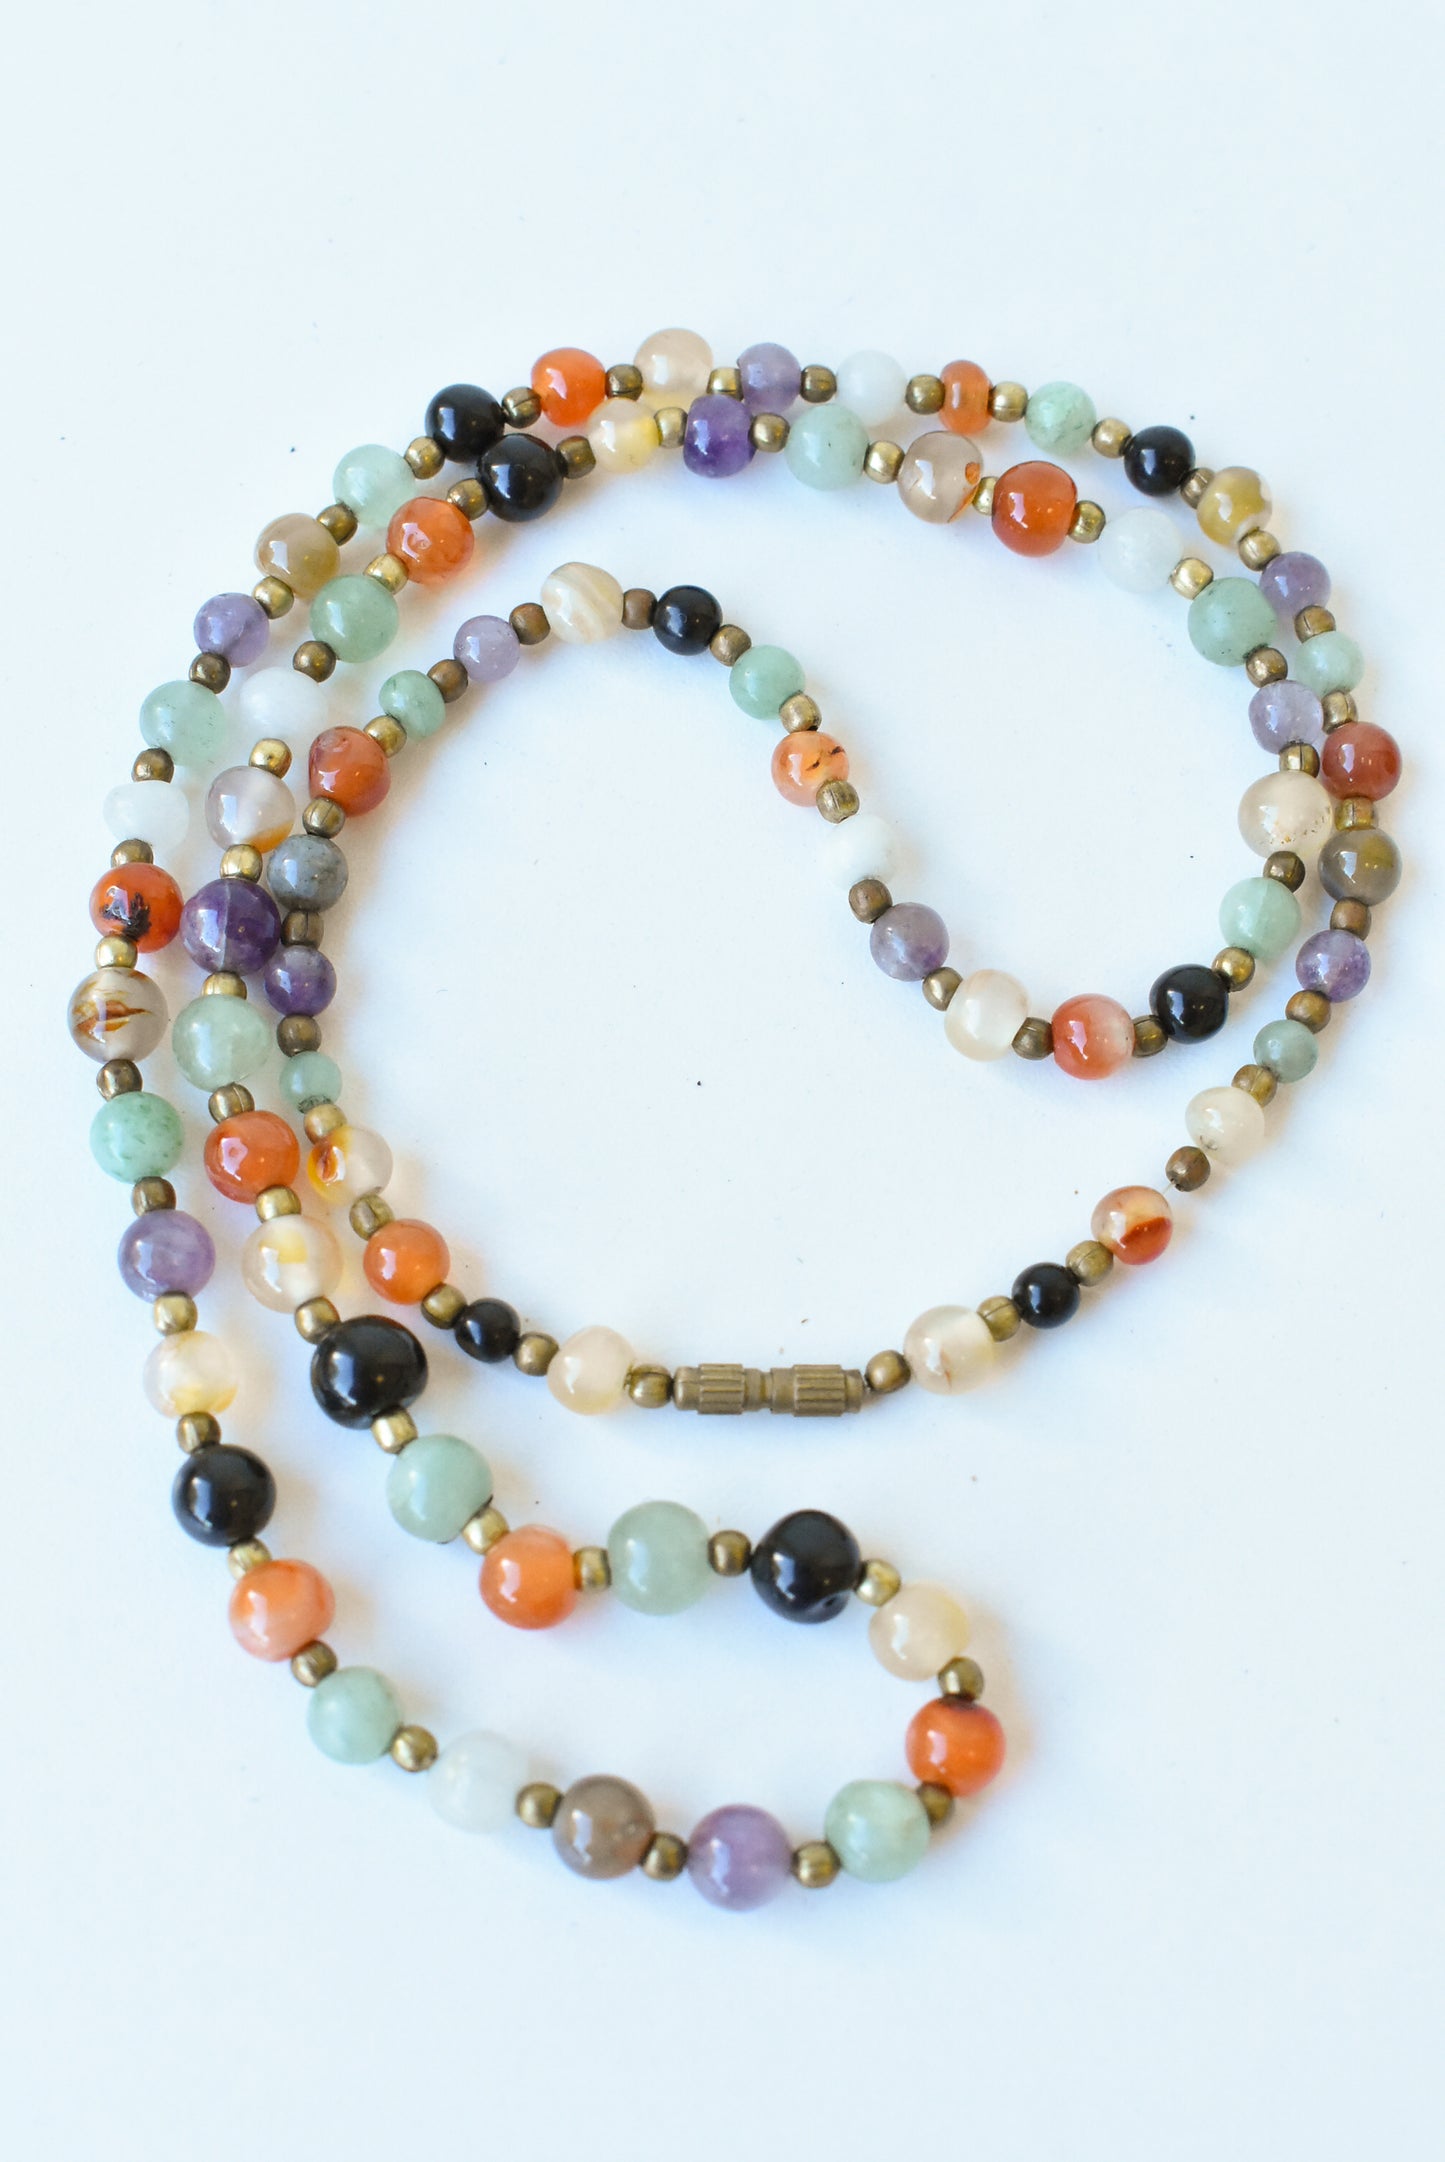 Vintage semiprecious bead necklace